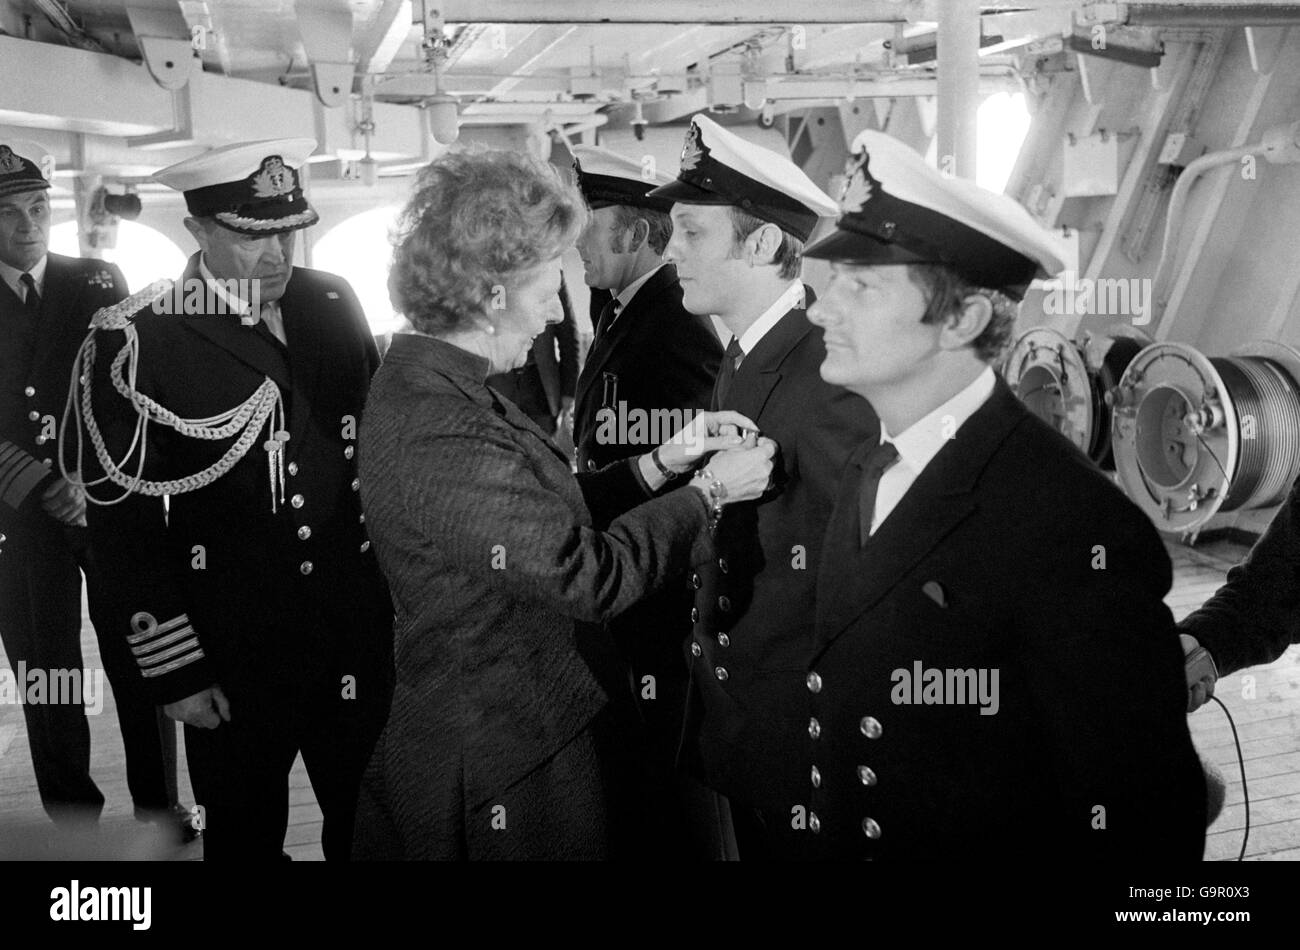 La première ministre Margaret Thatcher, qui a passé 80 minutes à bord du HMS Hermes, alors qu’elle naviguait jusqu’à Portsmouth, fixe une longue médaille de service sur la poitrine d’un officier, tandis que le capitaine Lynn Middleton regarde. Banque D'Images